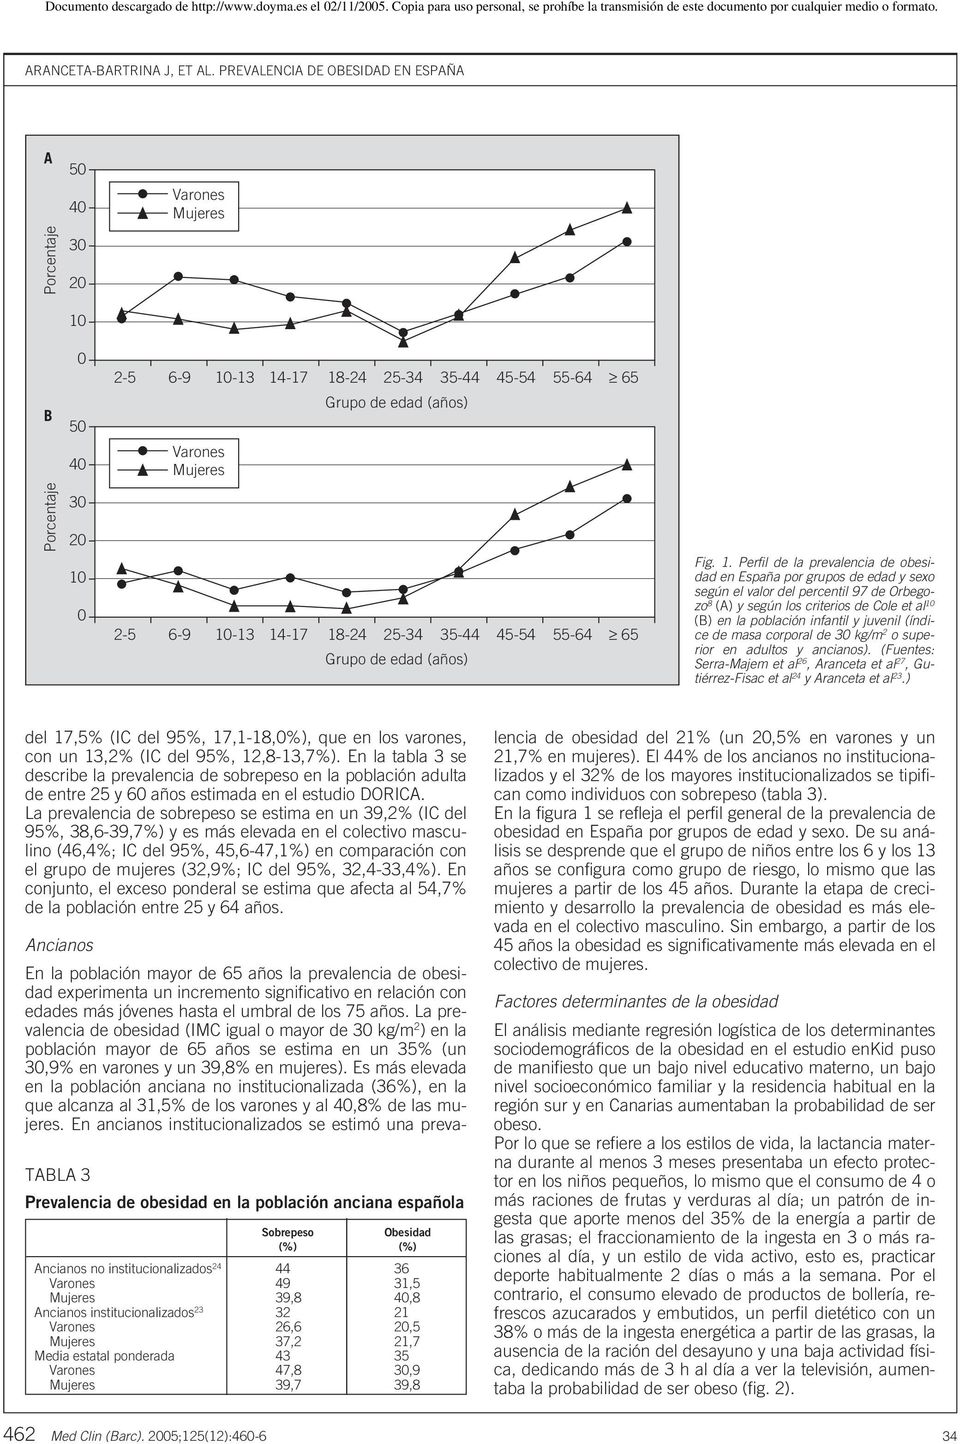 Perfil de la prevalencia de obesidad en España por grupos de edad y sexo según el valor del percentil 97 de Orbegozo 8 (A) y según los criterios de Cole et al 10 (B) en la población infantil y